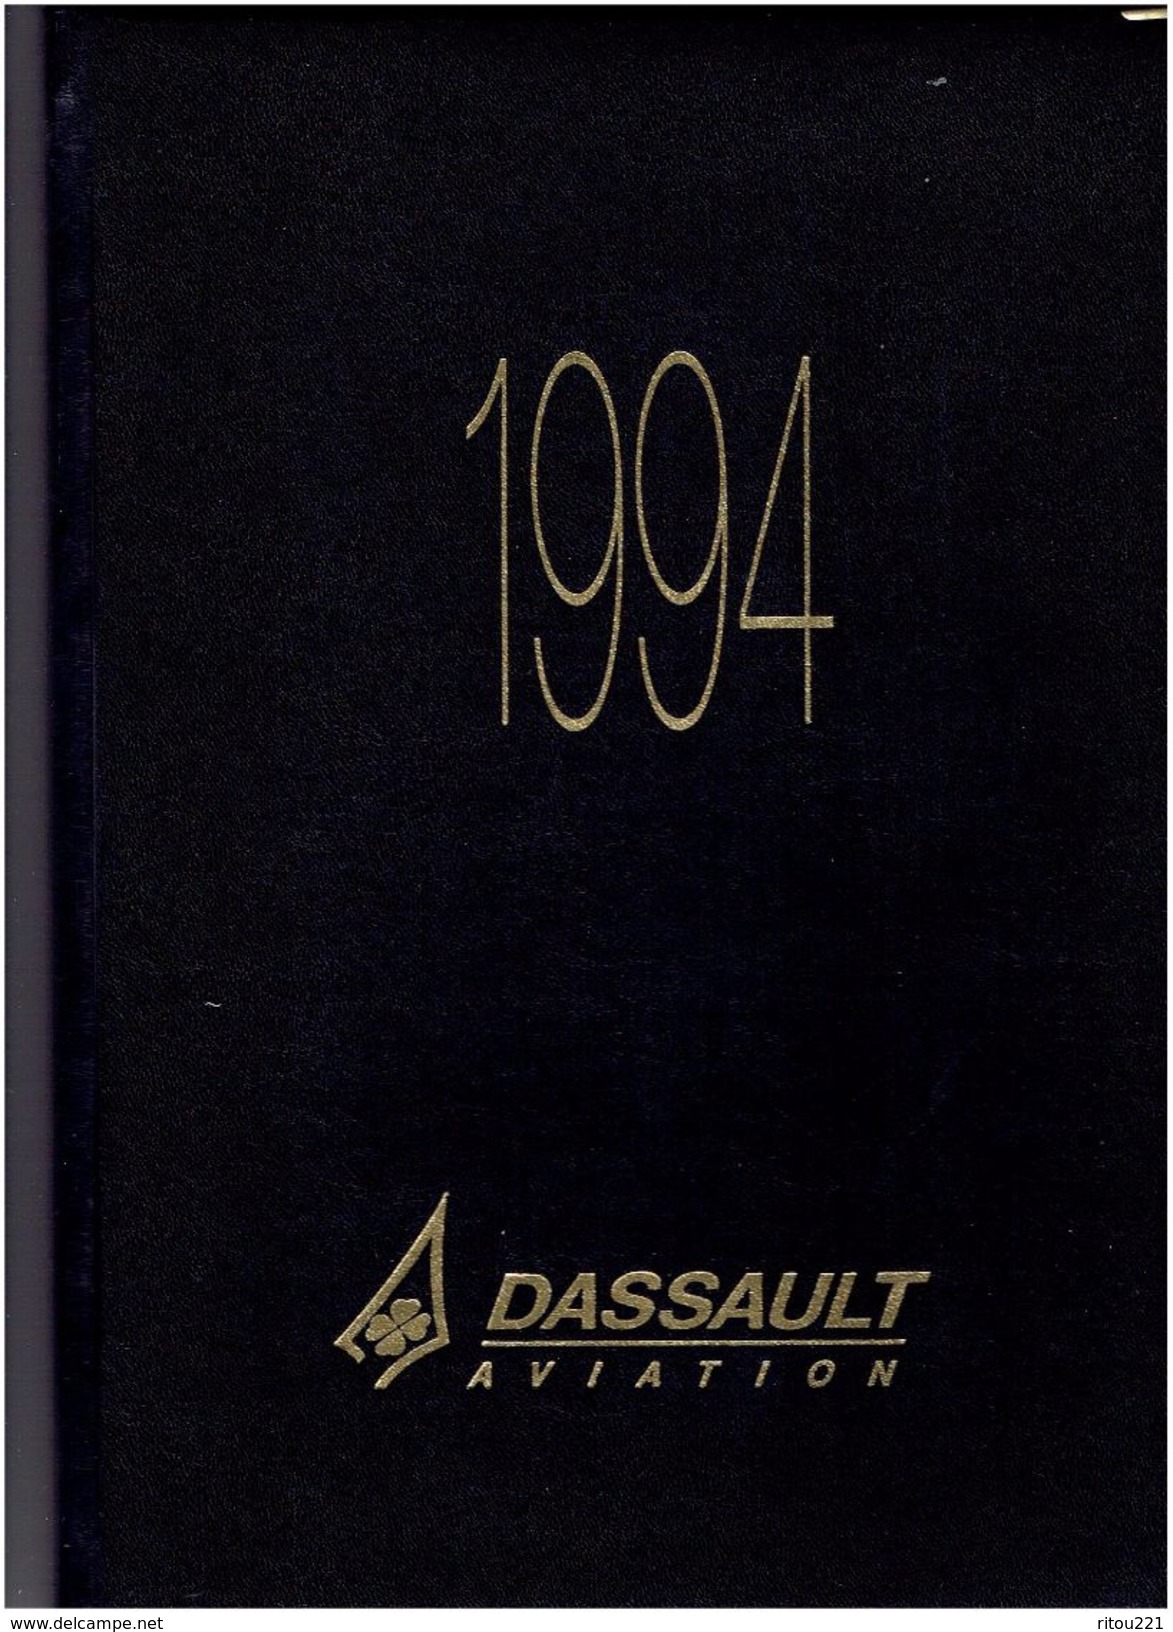 Agenda 1994 - DASSAULT AVIATION - Avion ESPACE VOITURE DE COURSE PEUGEOT 905 Esso HELARY BOUCHUT - Articles De Papeterie